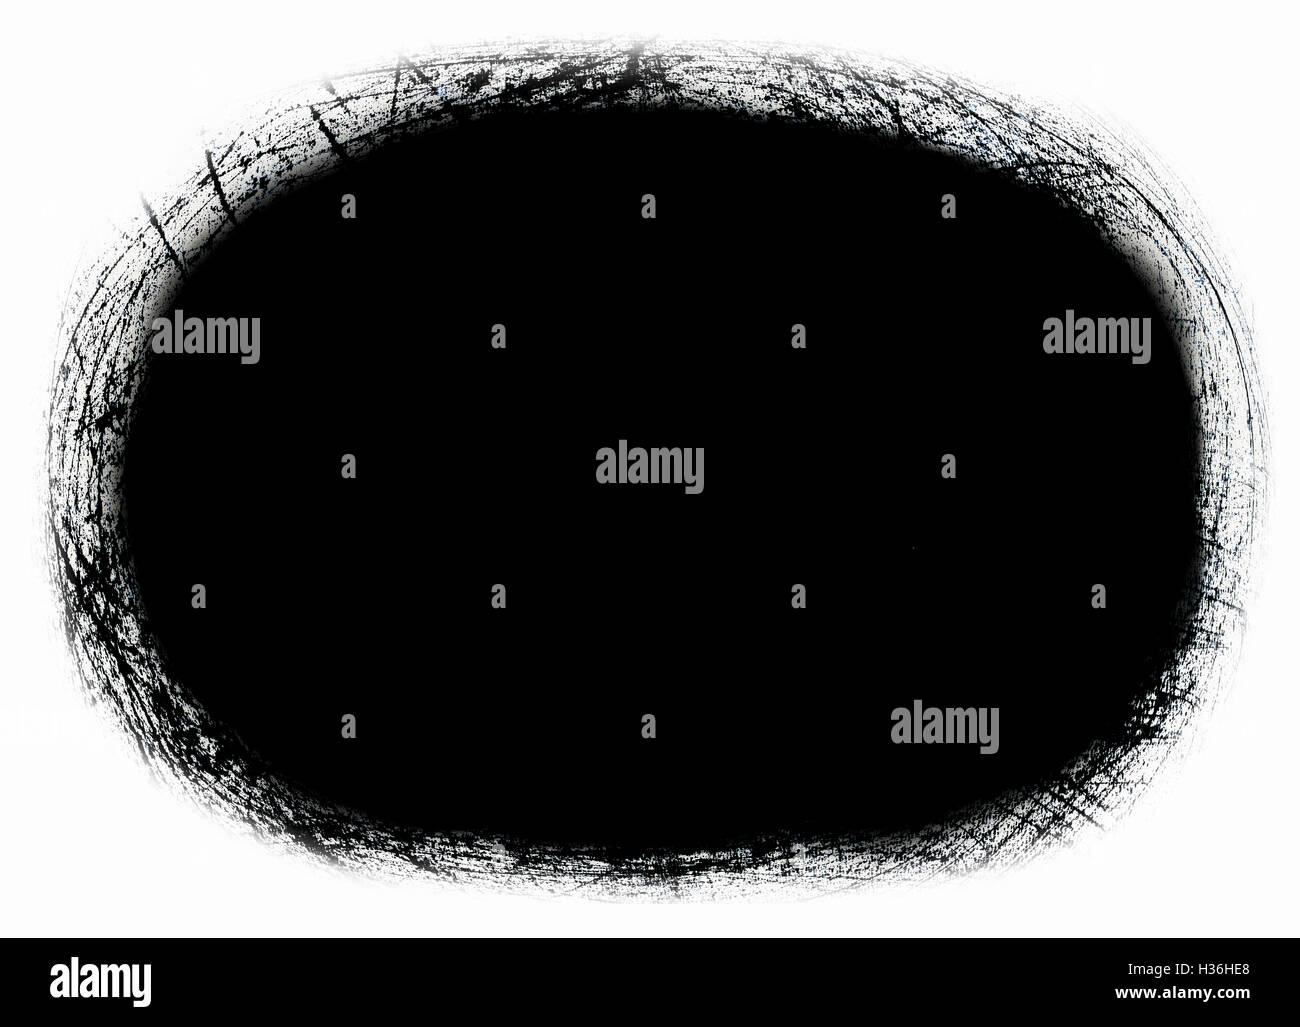 Zusammenfassung Hintergrund - schwarzes Loch - Rahmen aus Kritzeleien - Layer für Foto-editor Stockfoto